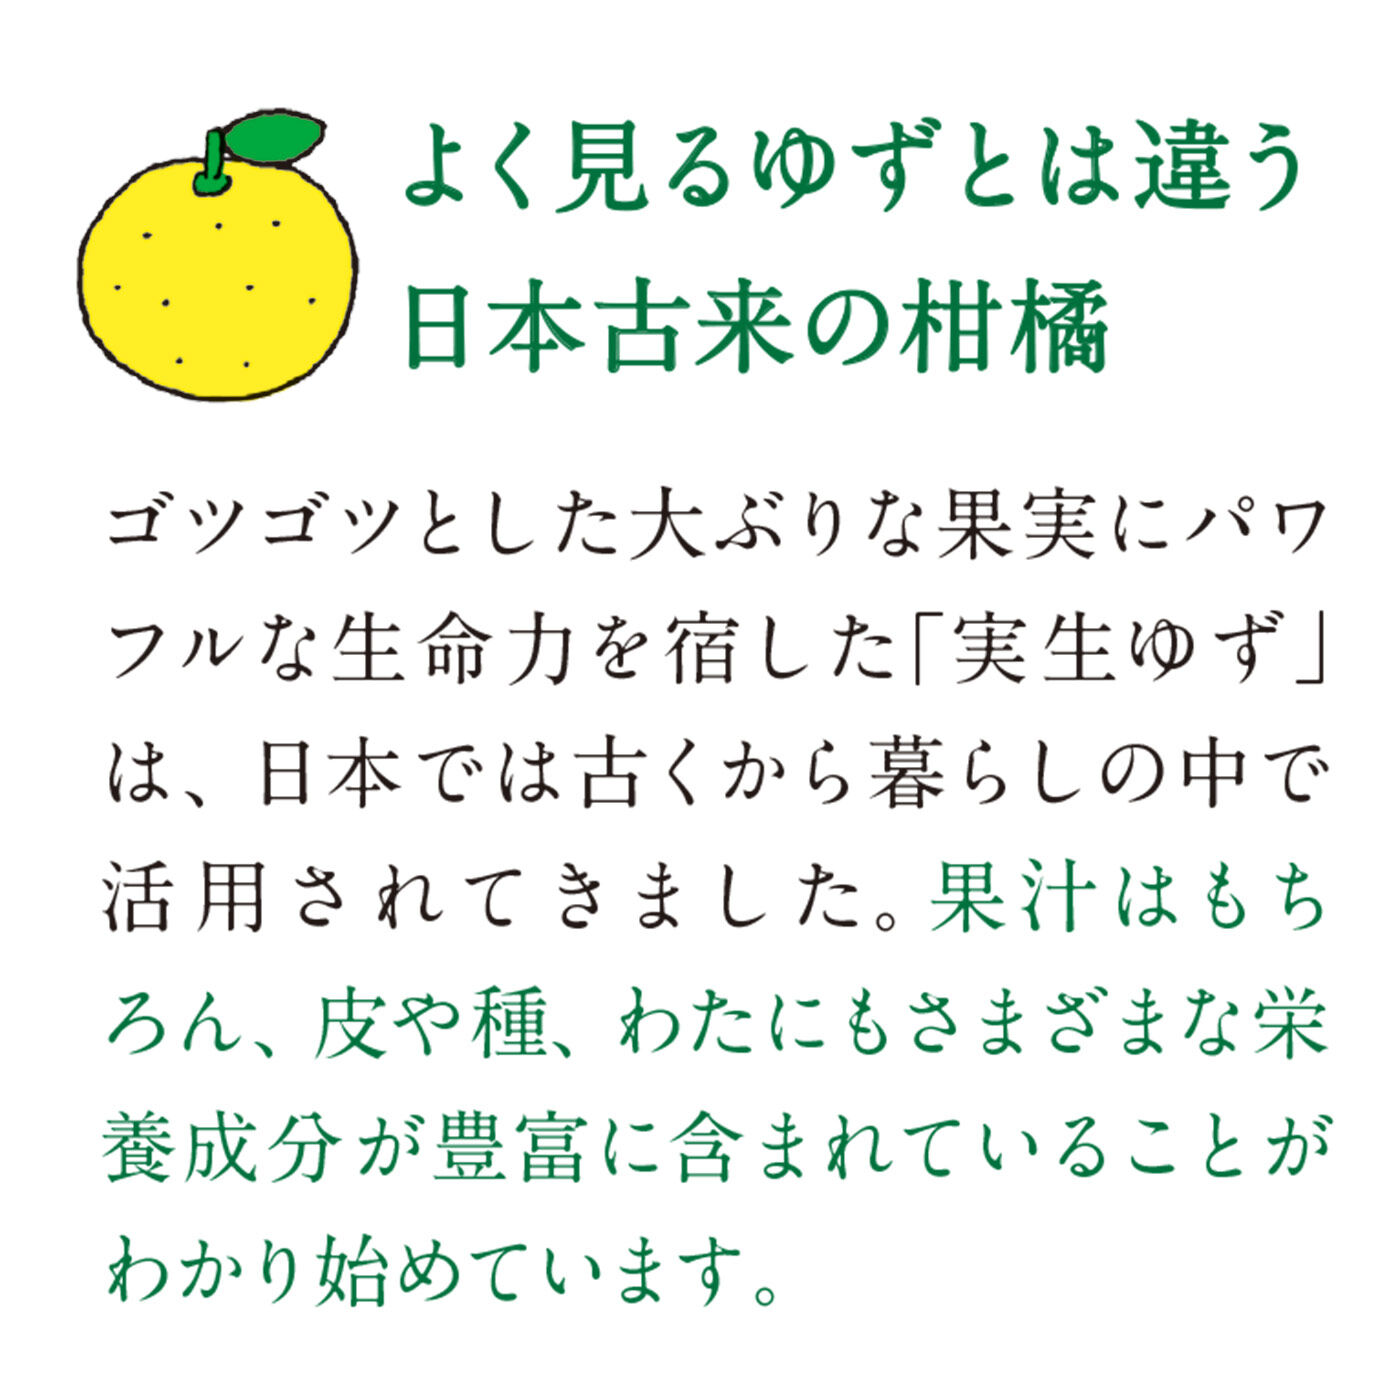 フェリシモの雑貨 Kraso|日本人の心のふるさと里山からの贈りもの　実生（みしょう）ゆず果実丸ごとクリスタルキャンディー